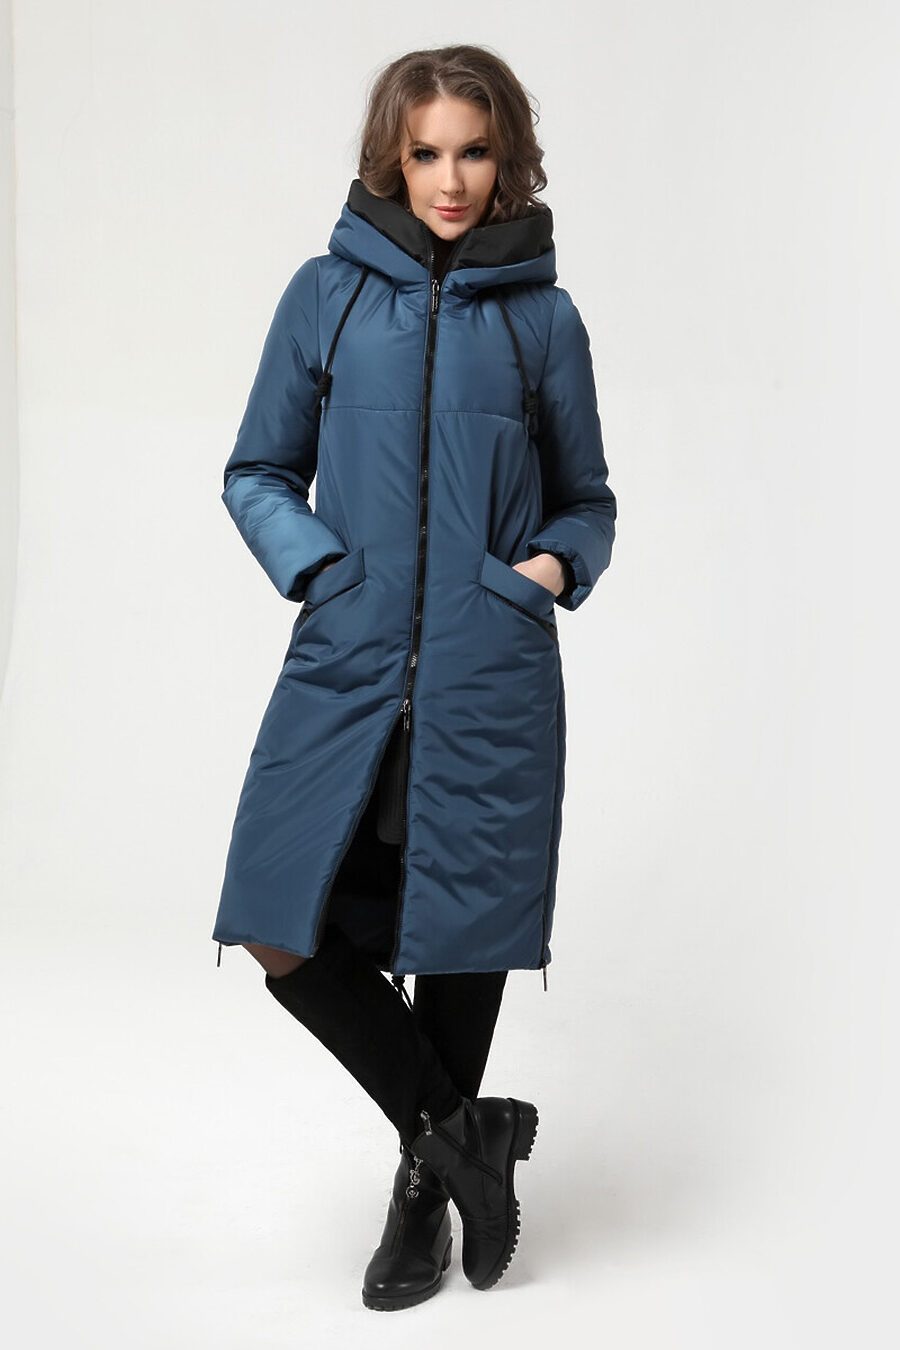 Пальто DIWAY (684789), купить в Moyo.moda